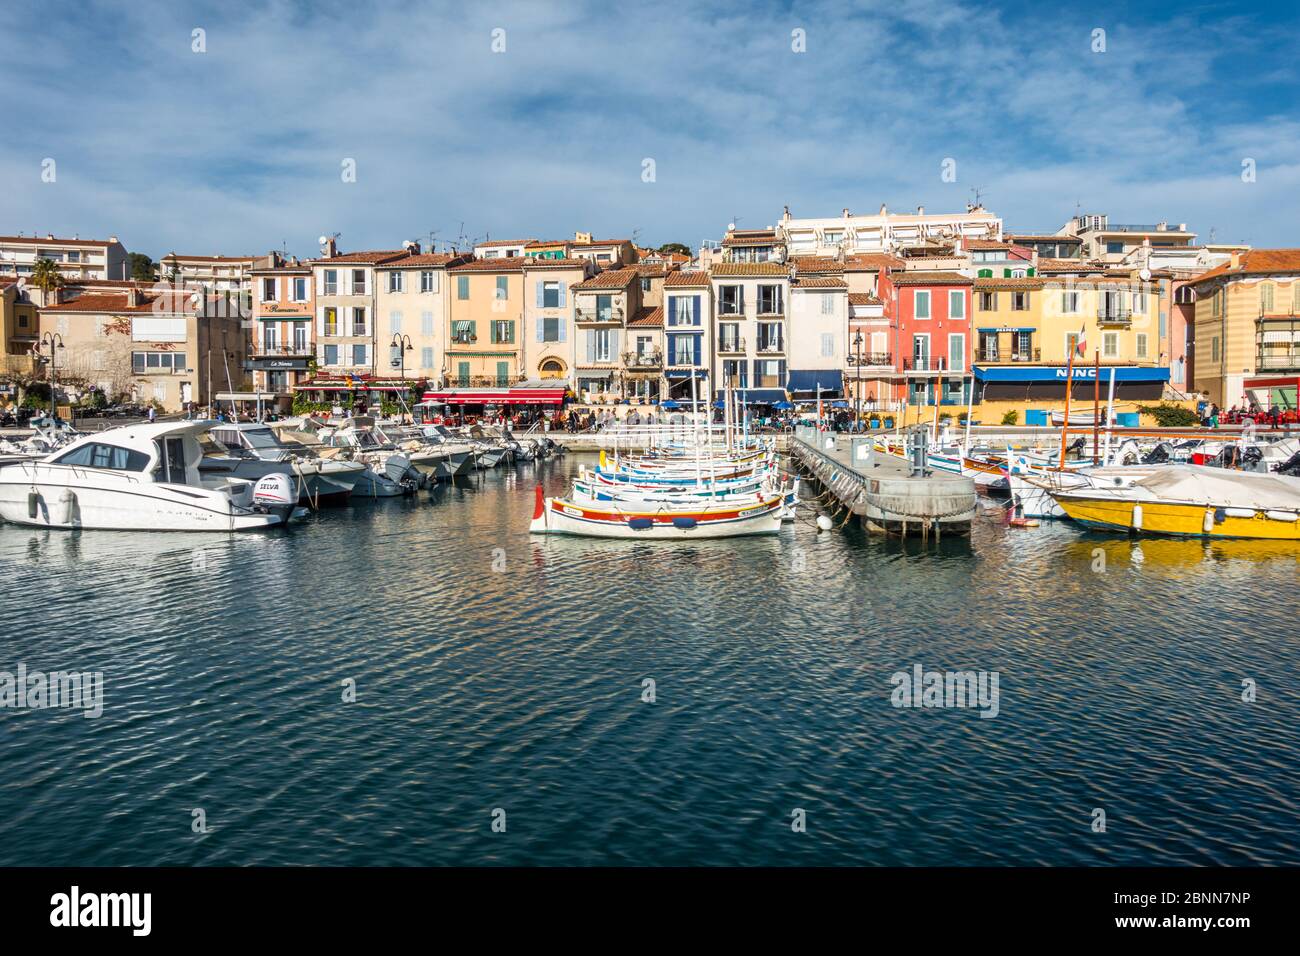 El colorido puerto de Cassis, una pequeña ciudad turística en el sur de Francia cerca de Marsella. Cassis, Francia, enero de 2020 Foto de stock